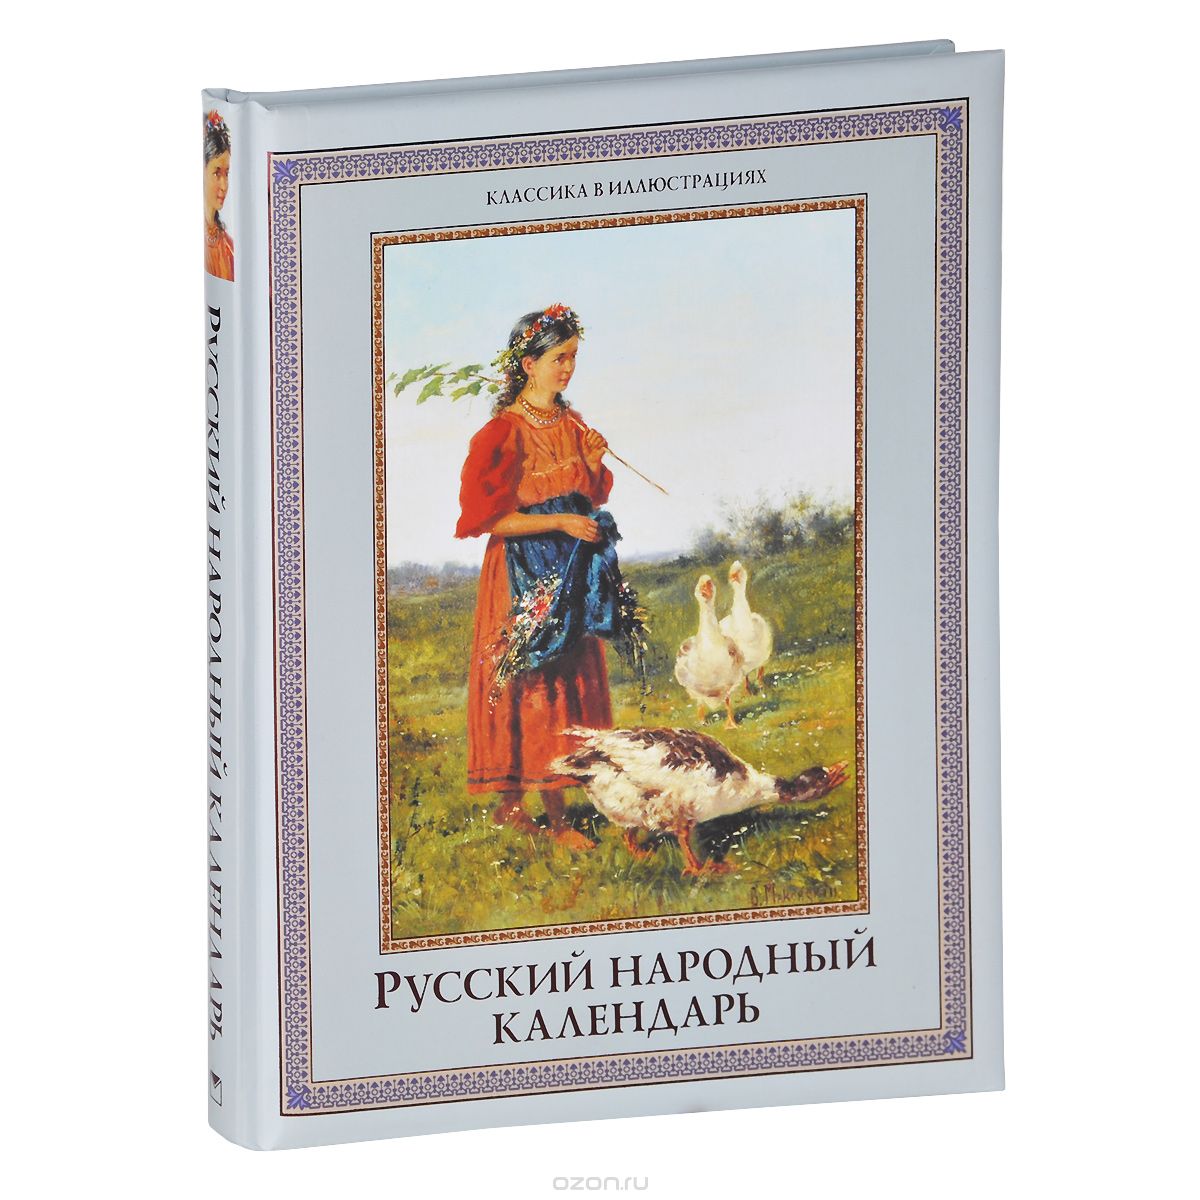 Скачать книгу "Русский народный календарь, Н. И. Решетников"